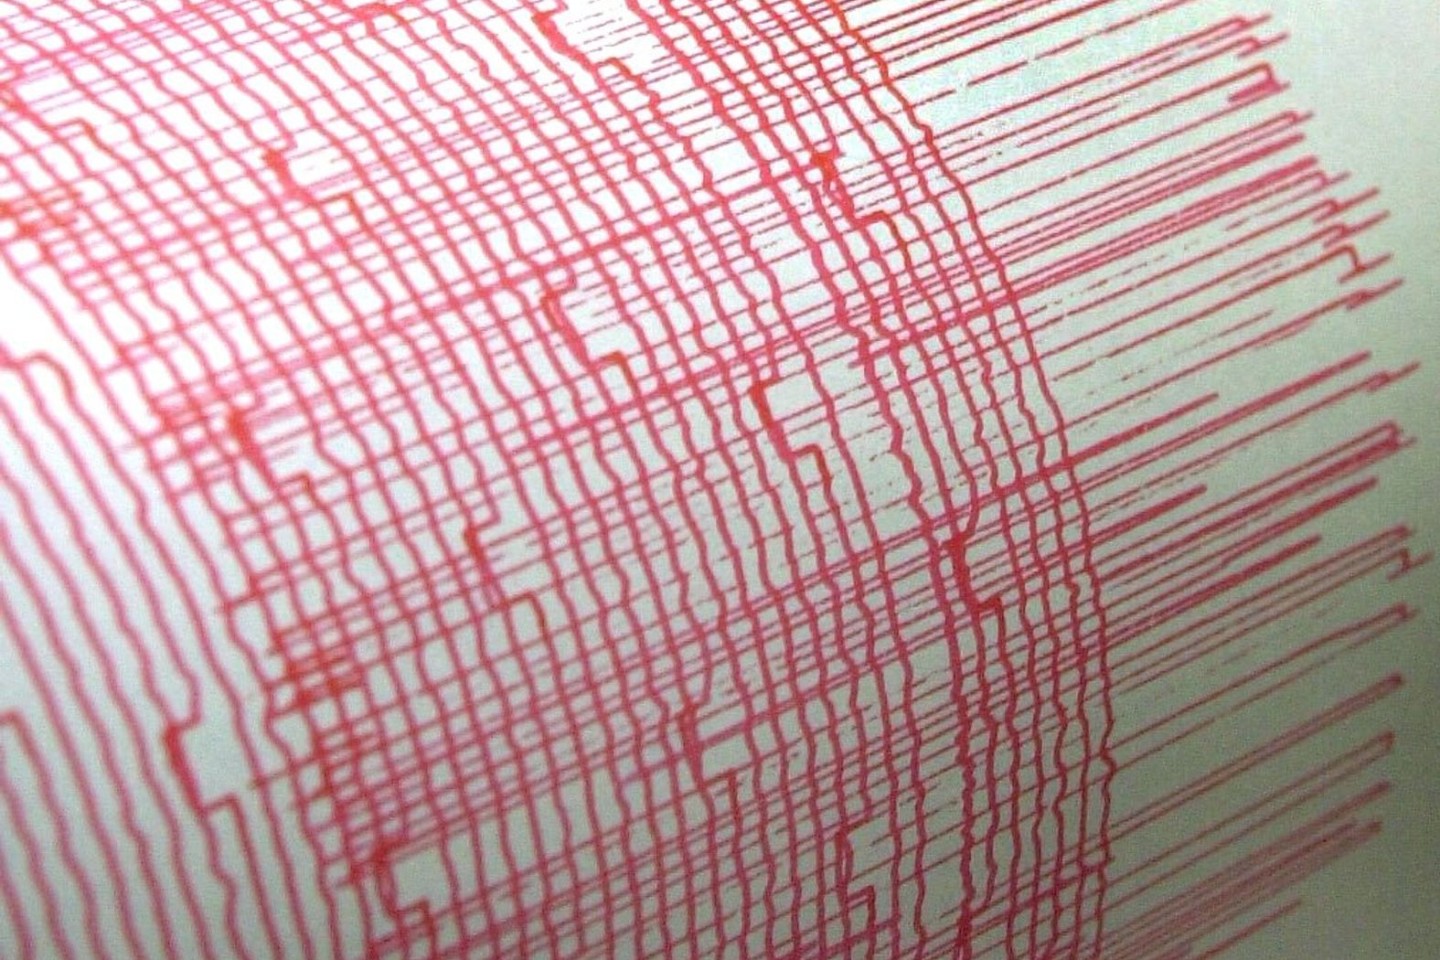 Ein Monitorschreiber zeichnet die Erschütterungen eines Erdbebens auf. (Symbolbild)